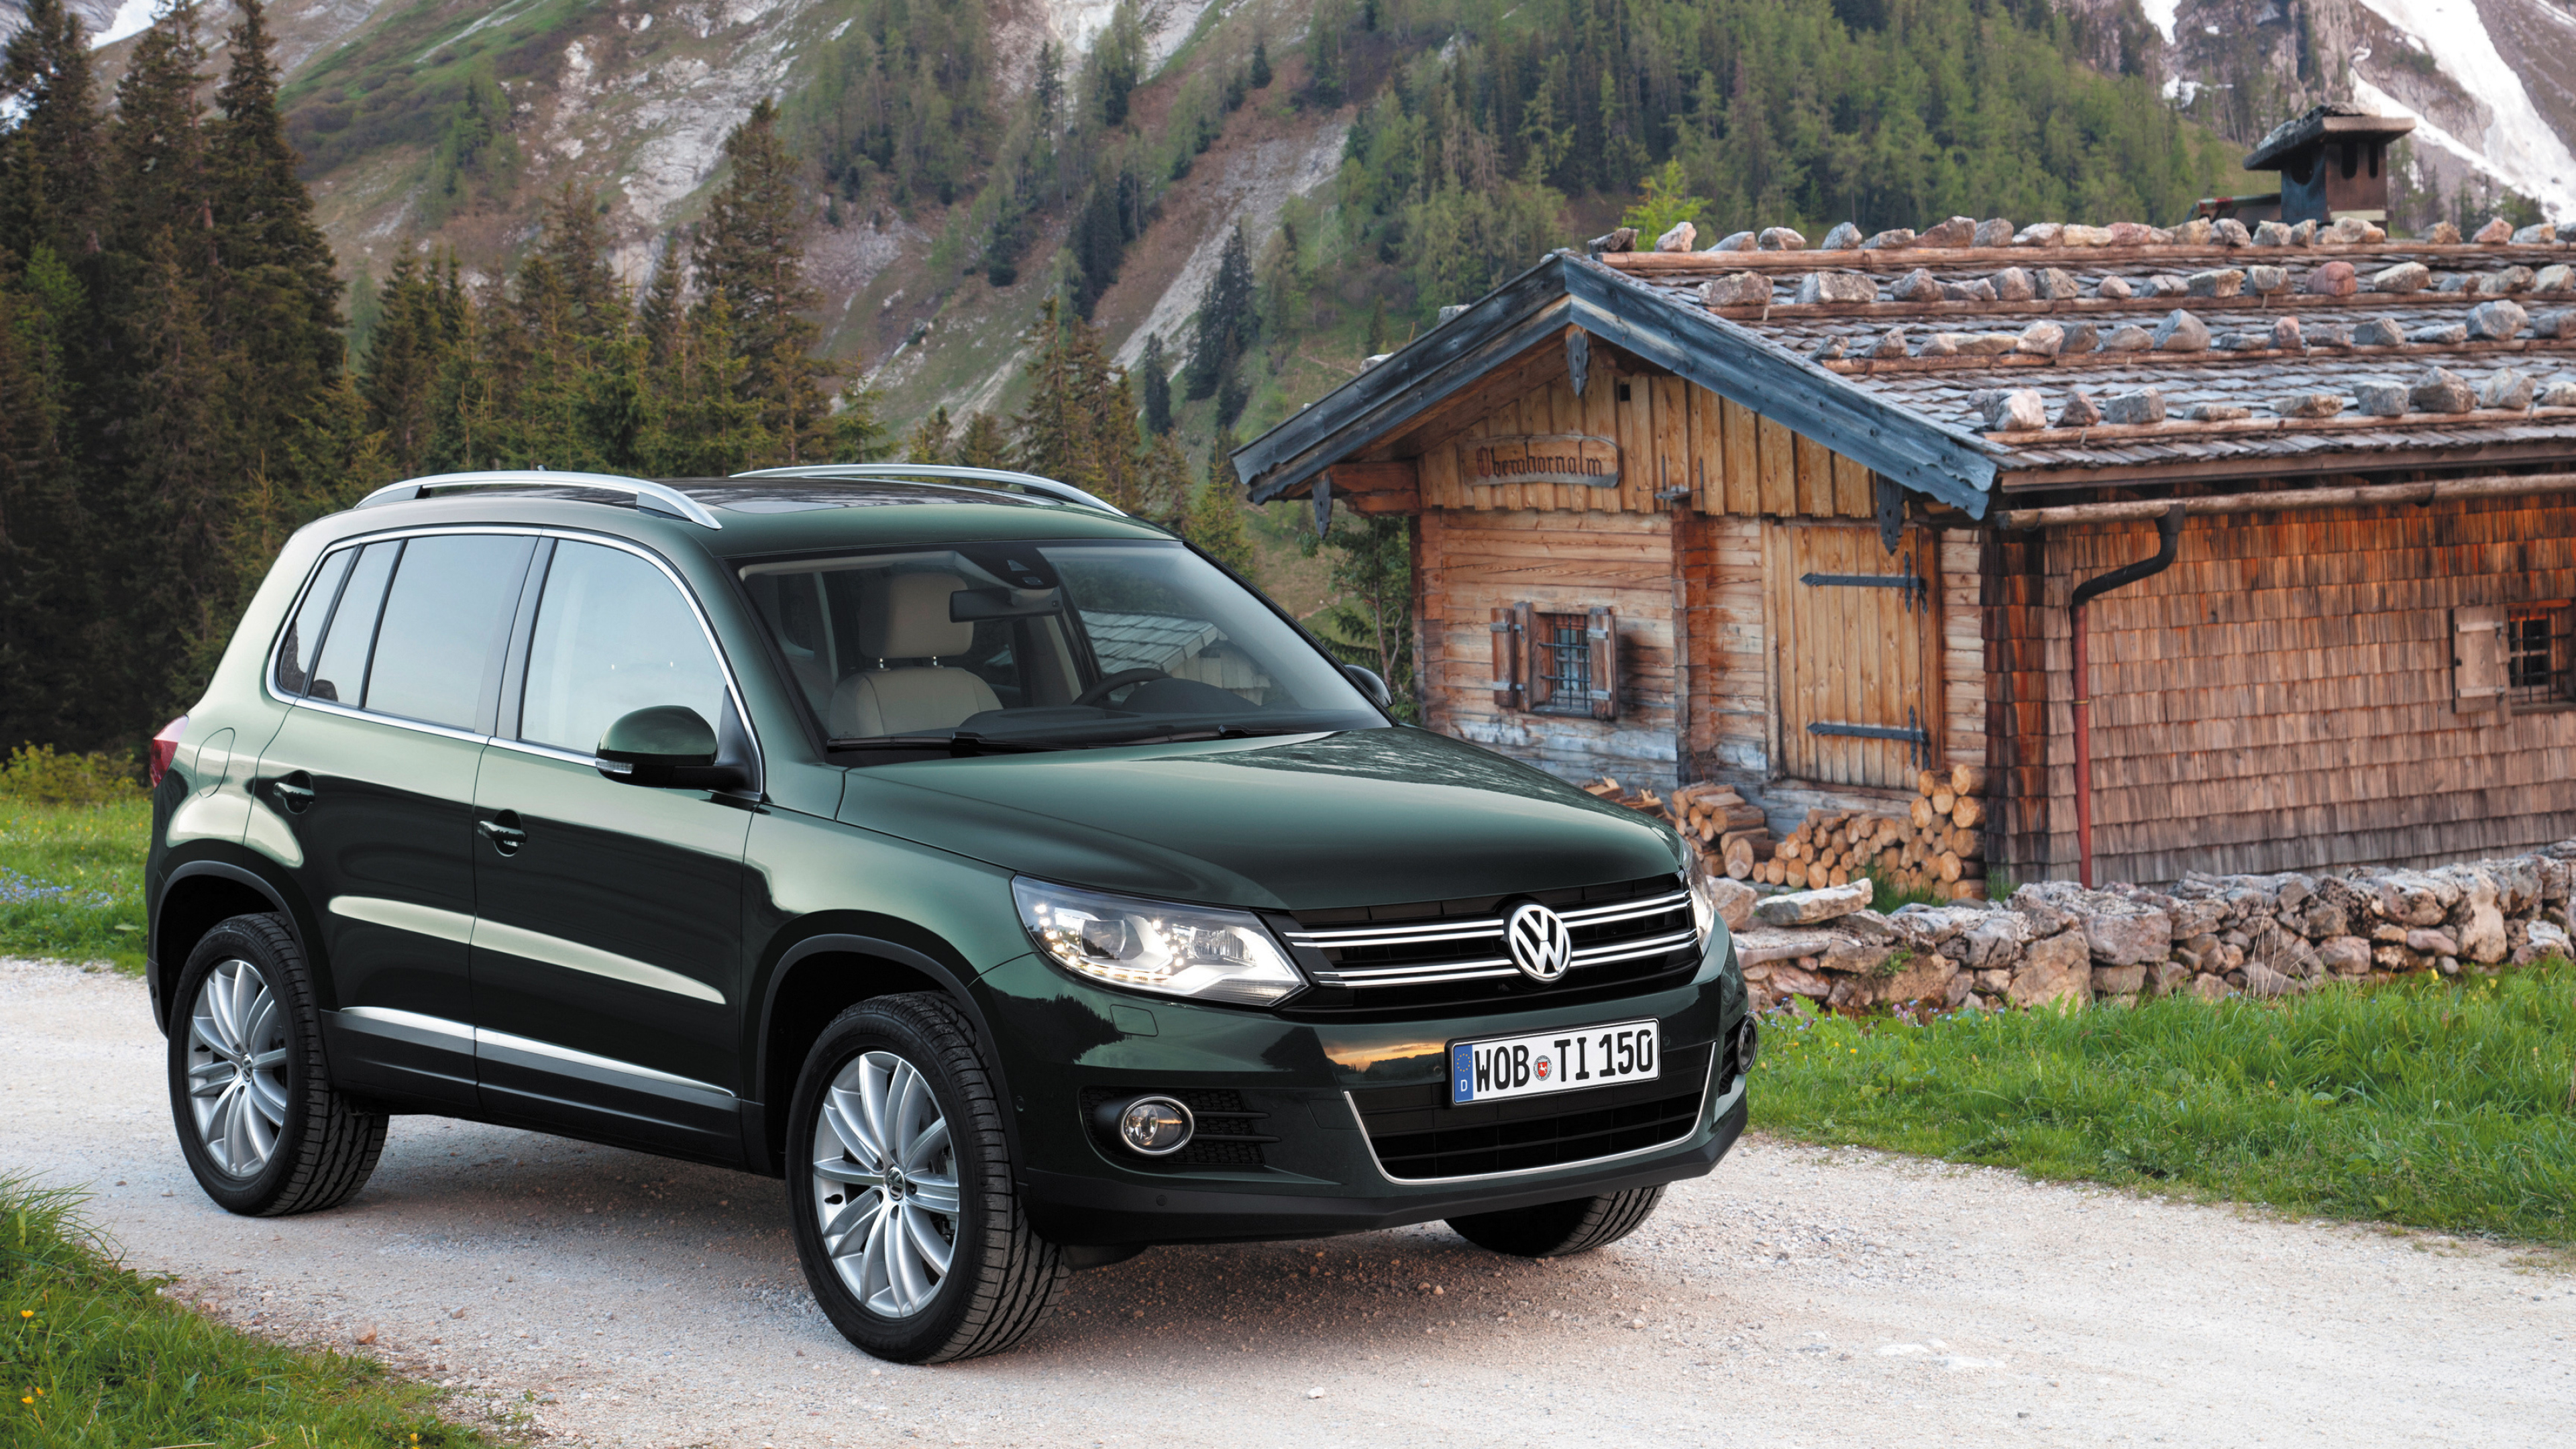 Volkswagen Tiguan, High-quality desktop wallpapers, Automotive elegance, 3840x2160 4K Desktop